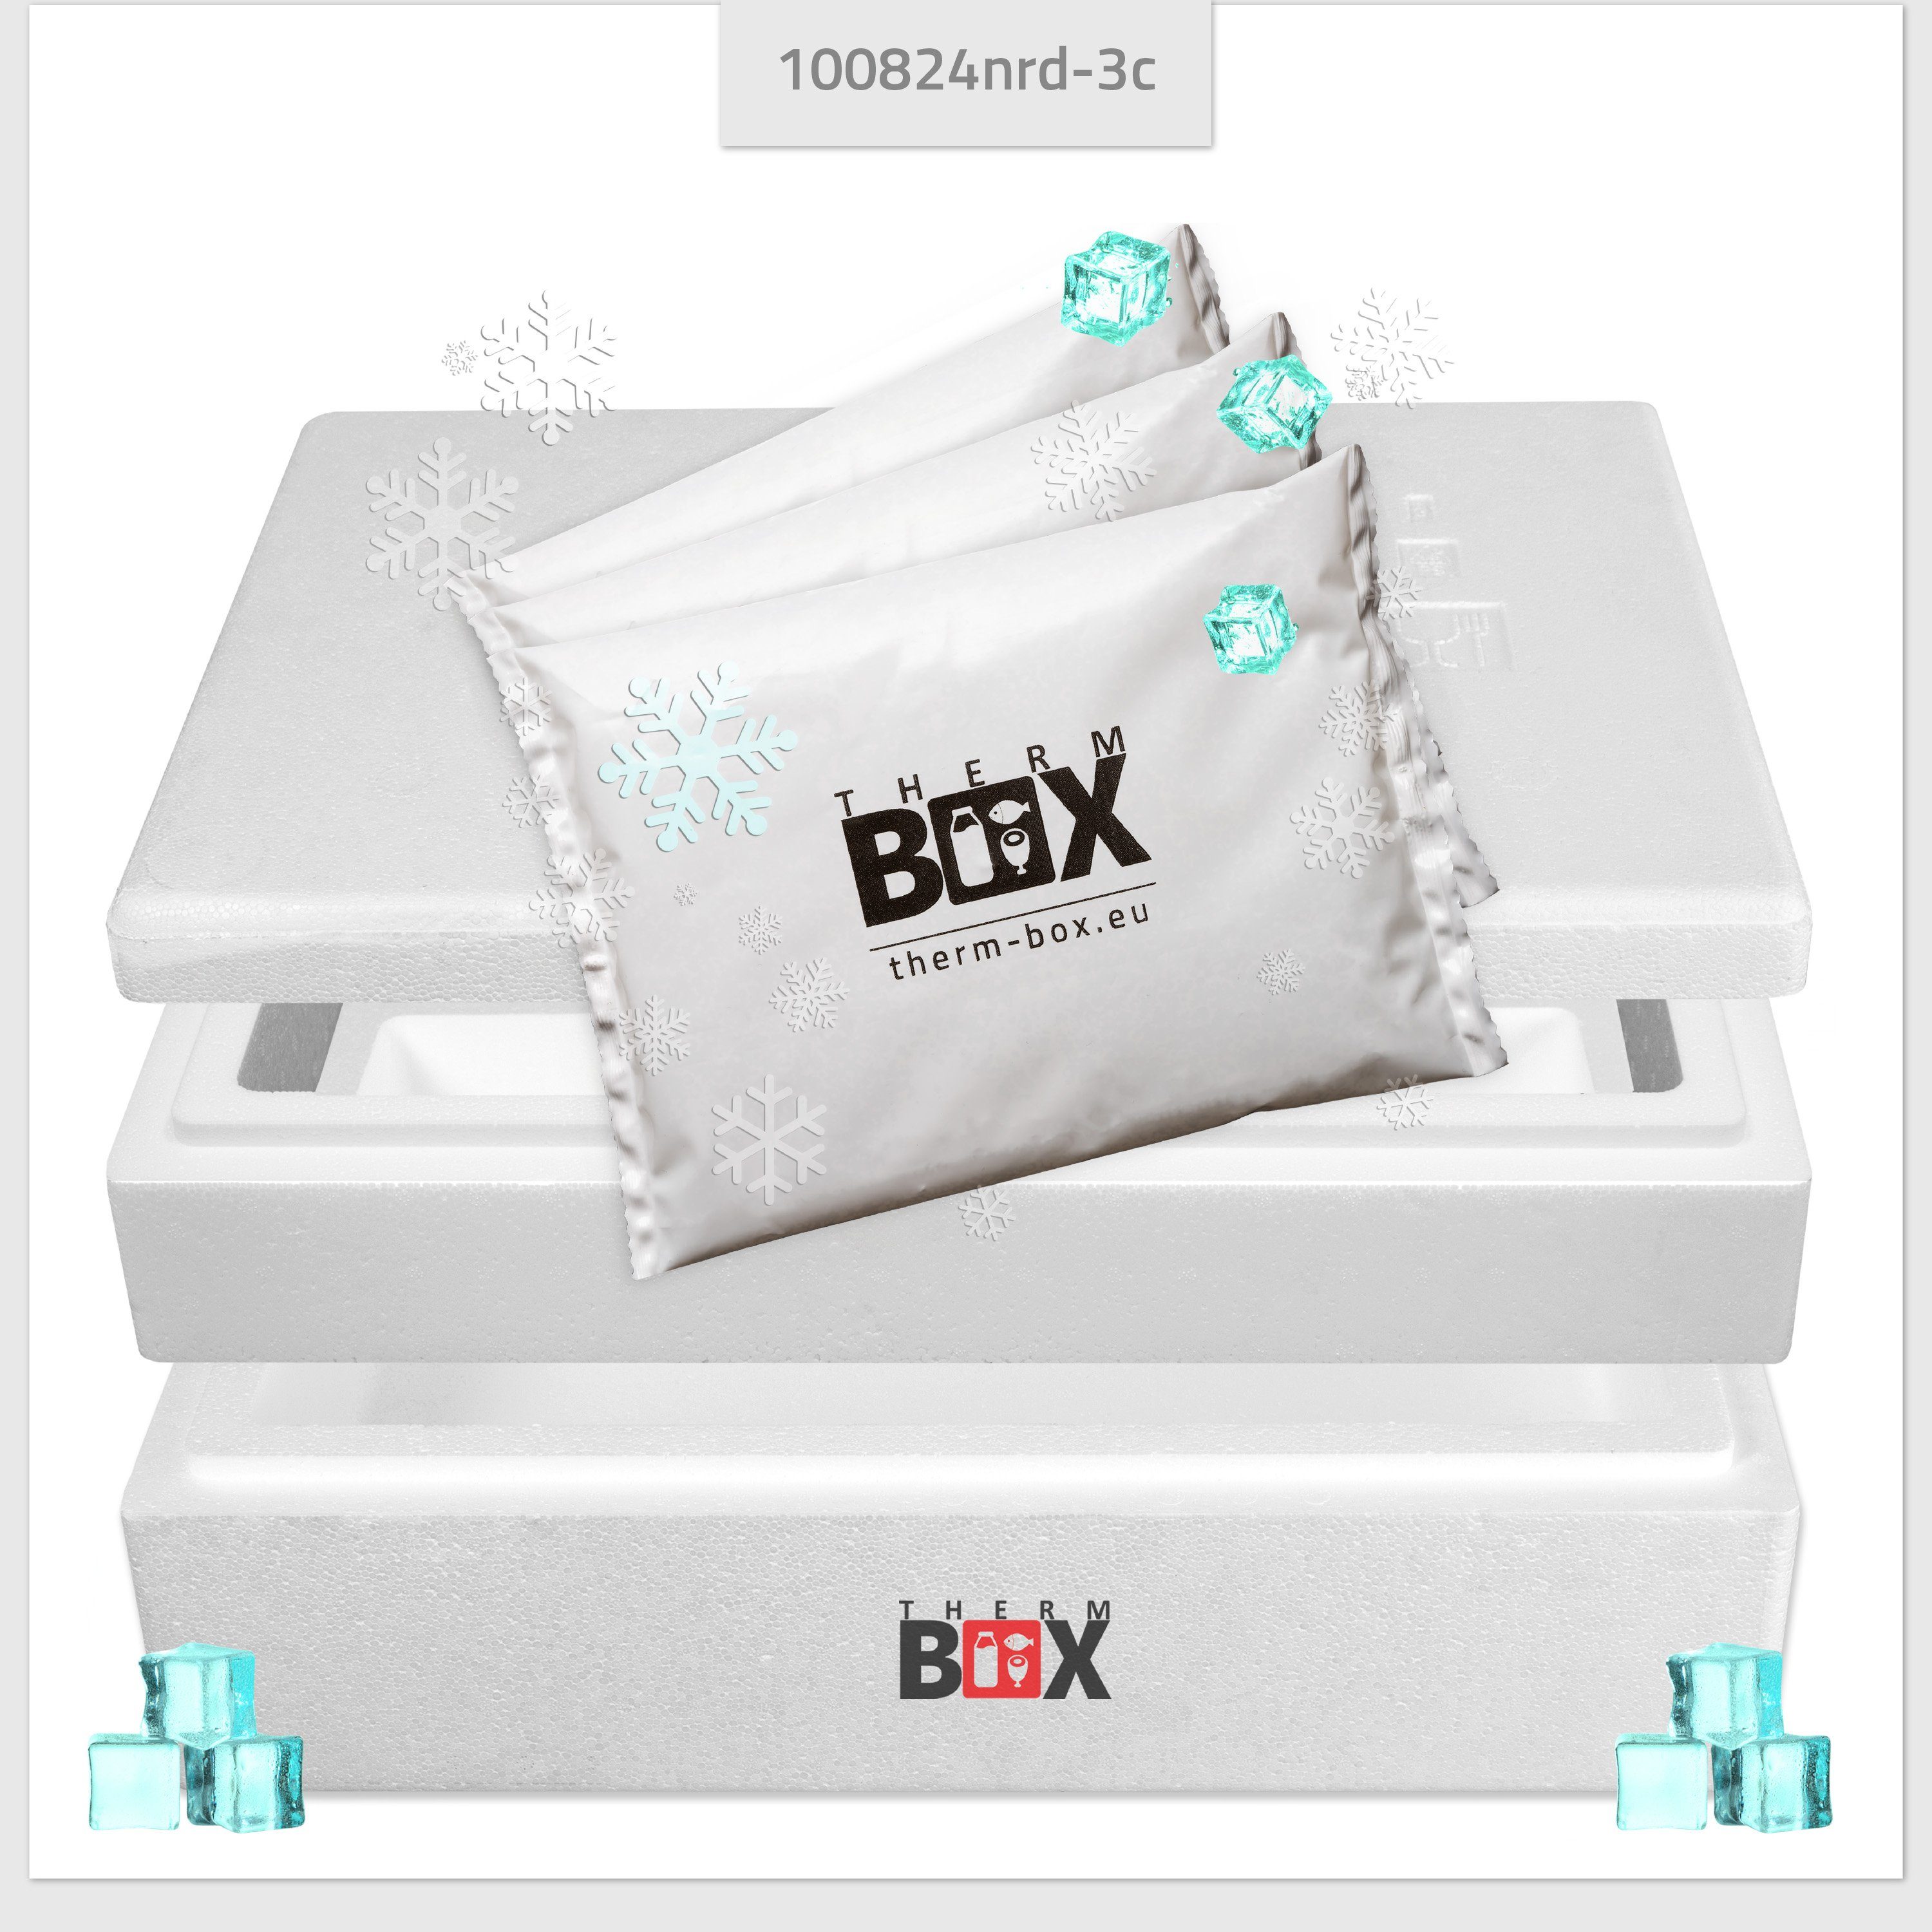 Modularbox THERM-BOX Thermobehälter Kühlkissen, Kühlkissen), Thermbox 3 25M mit 49x30x17cm Thermobehälter Styropor-Verdichtet, (0-tlg., mit Kühlbox 25,8L Innen: für Transportbox